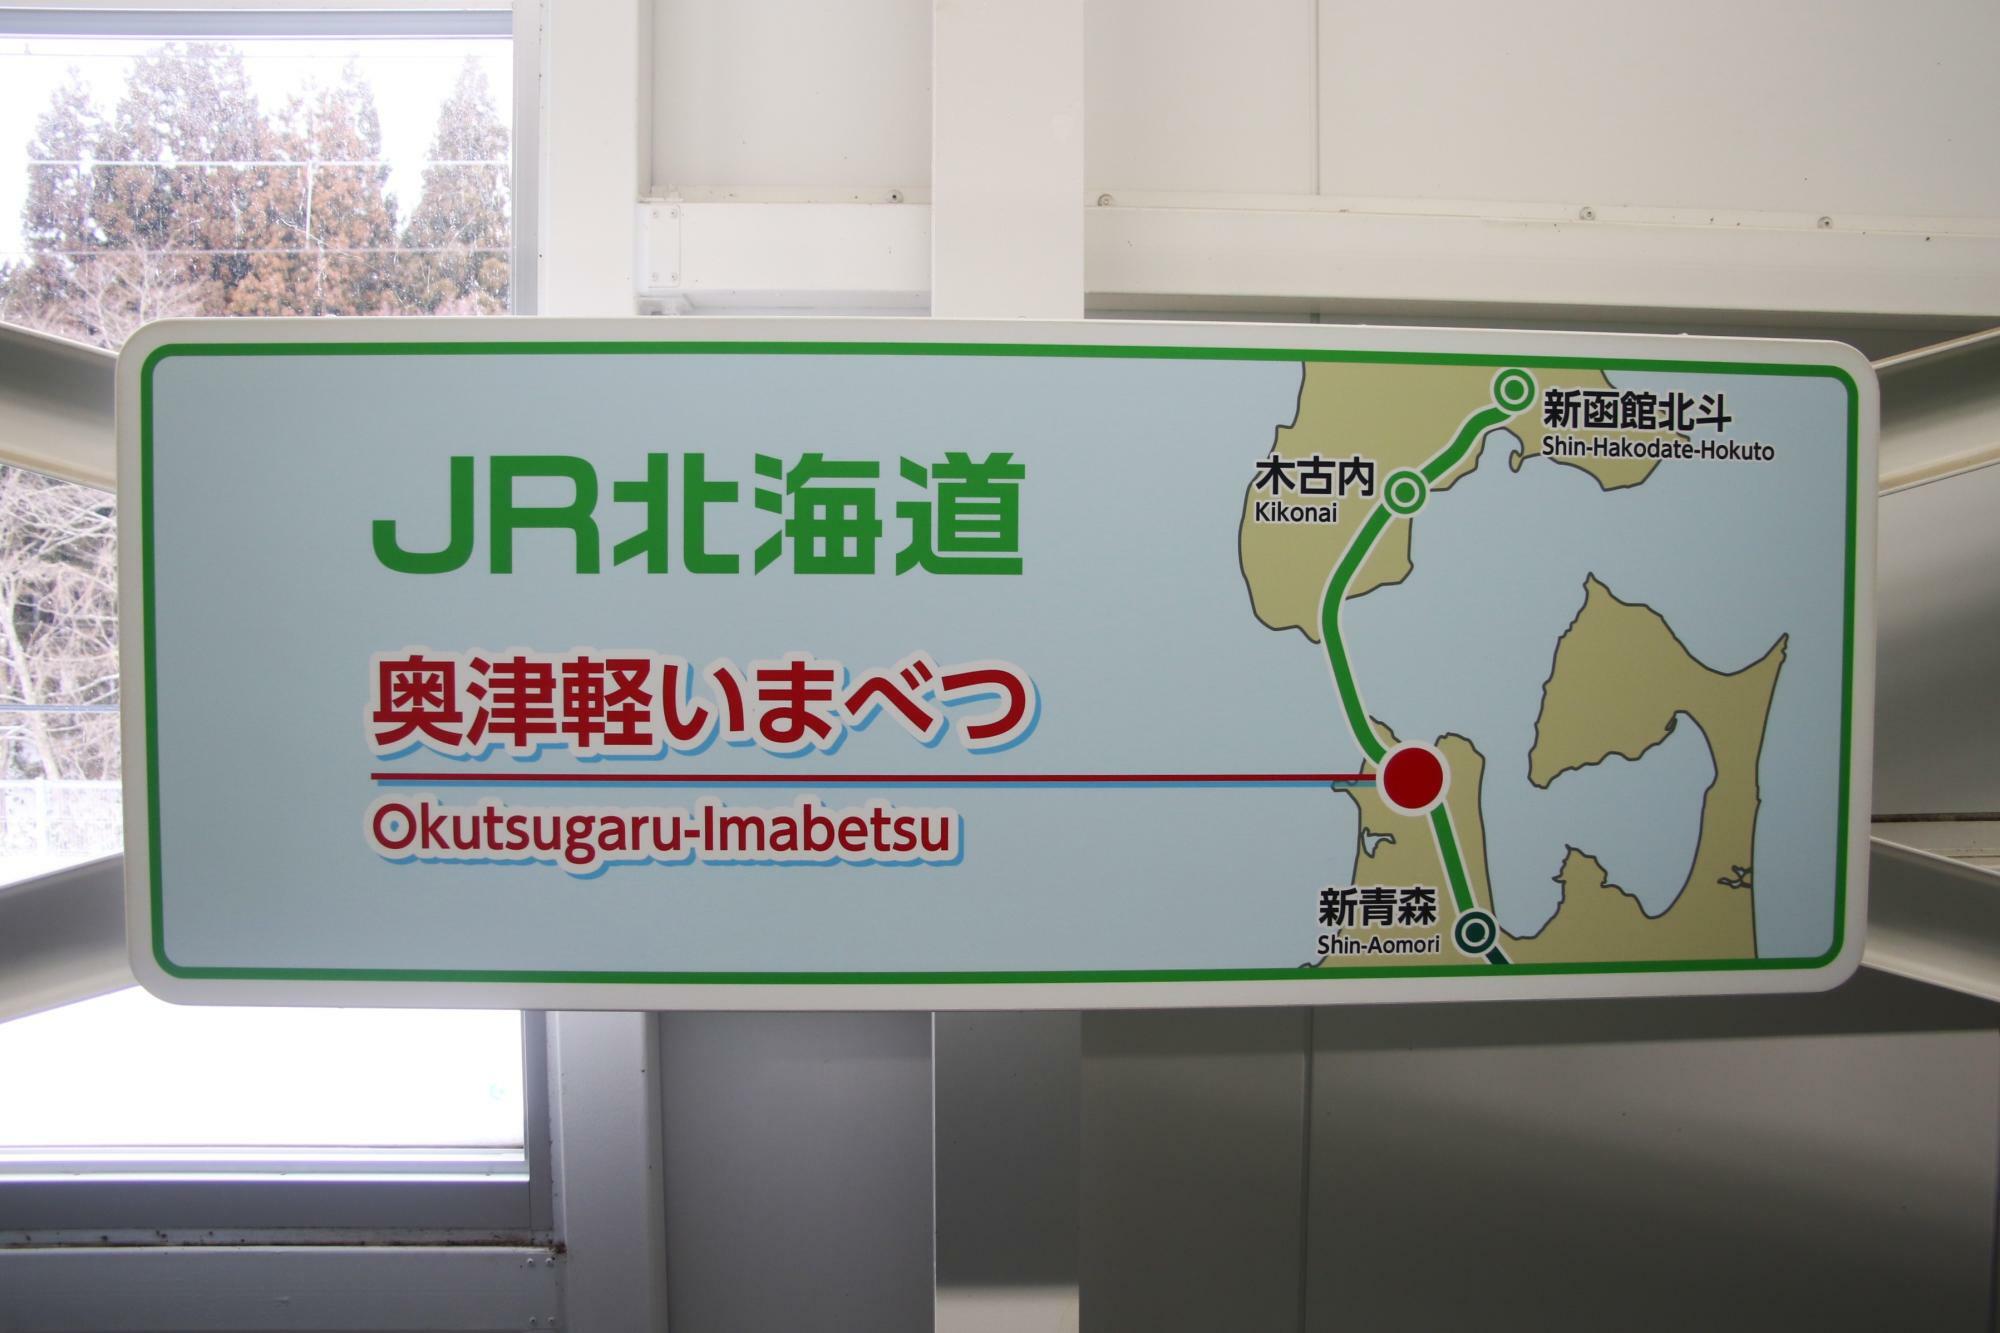 奥津軽いまべつ駅にある駅位置の看板